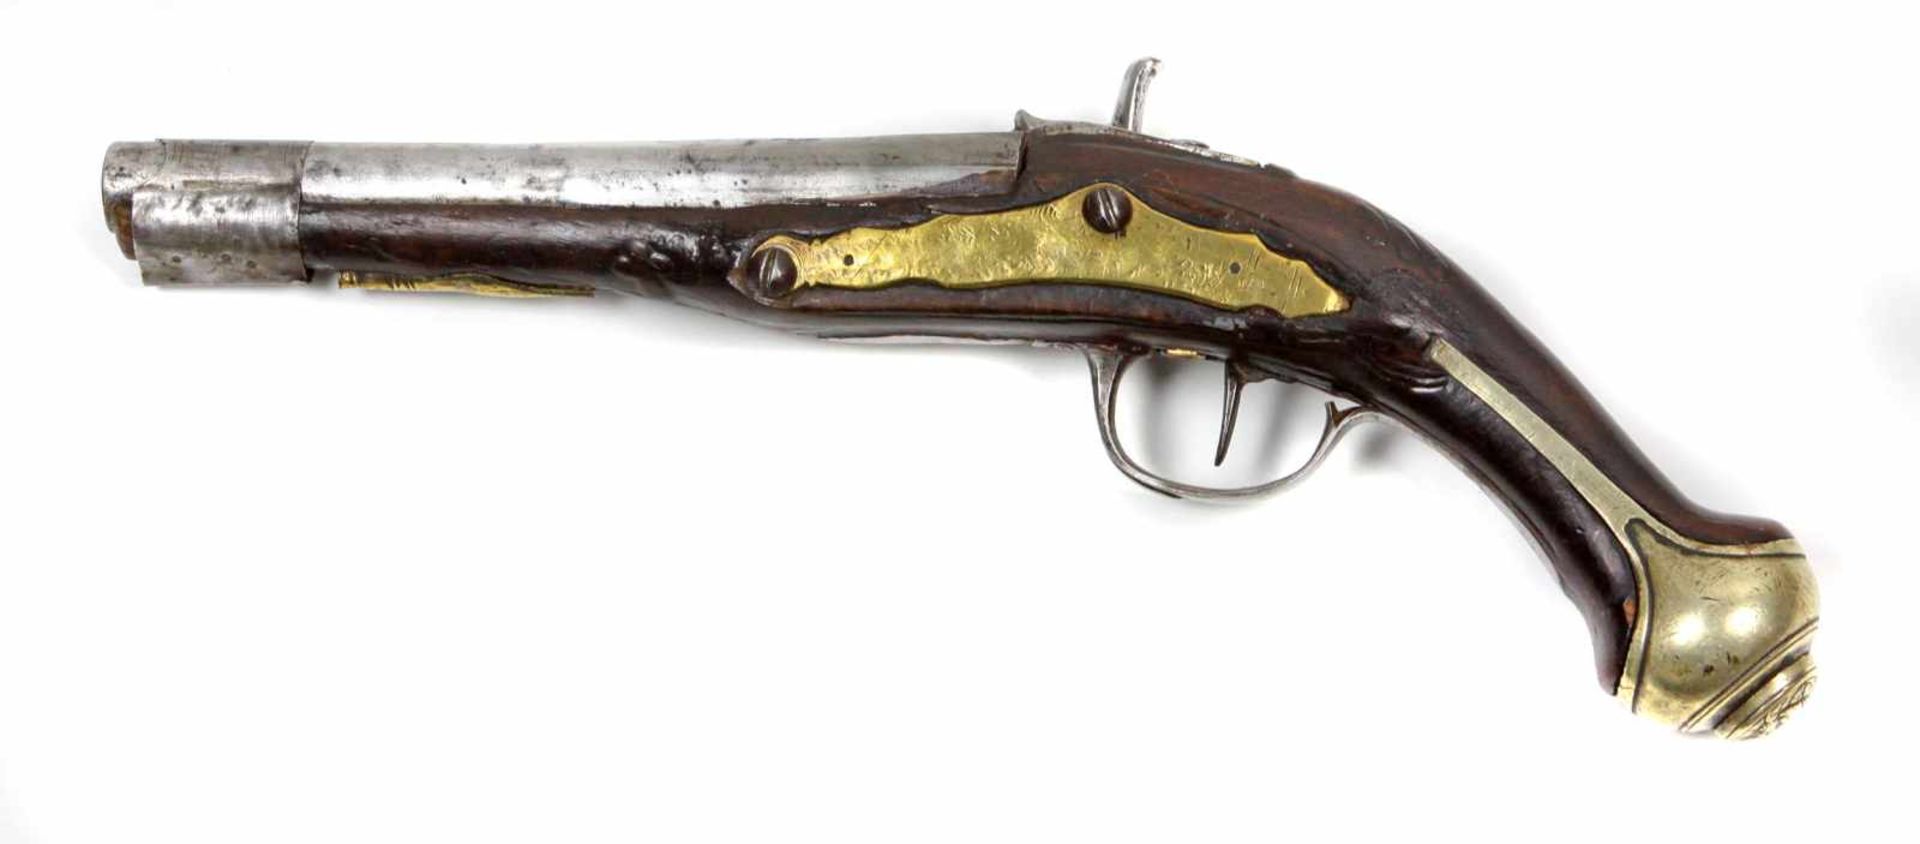 Vorderlader PistoleFeuerwaffe mit zylindrischem Eisenlauf an gebogenem Holzgriff u. teils von Holz - Bild 2 aus 2